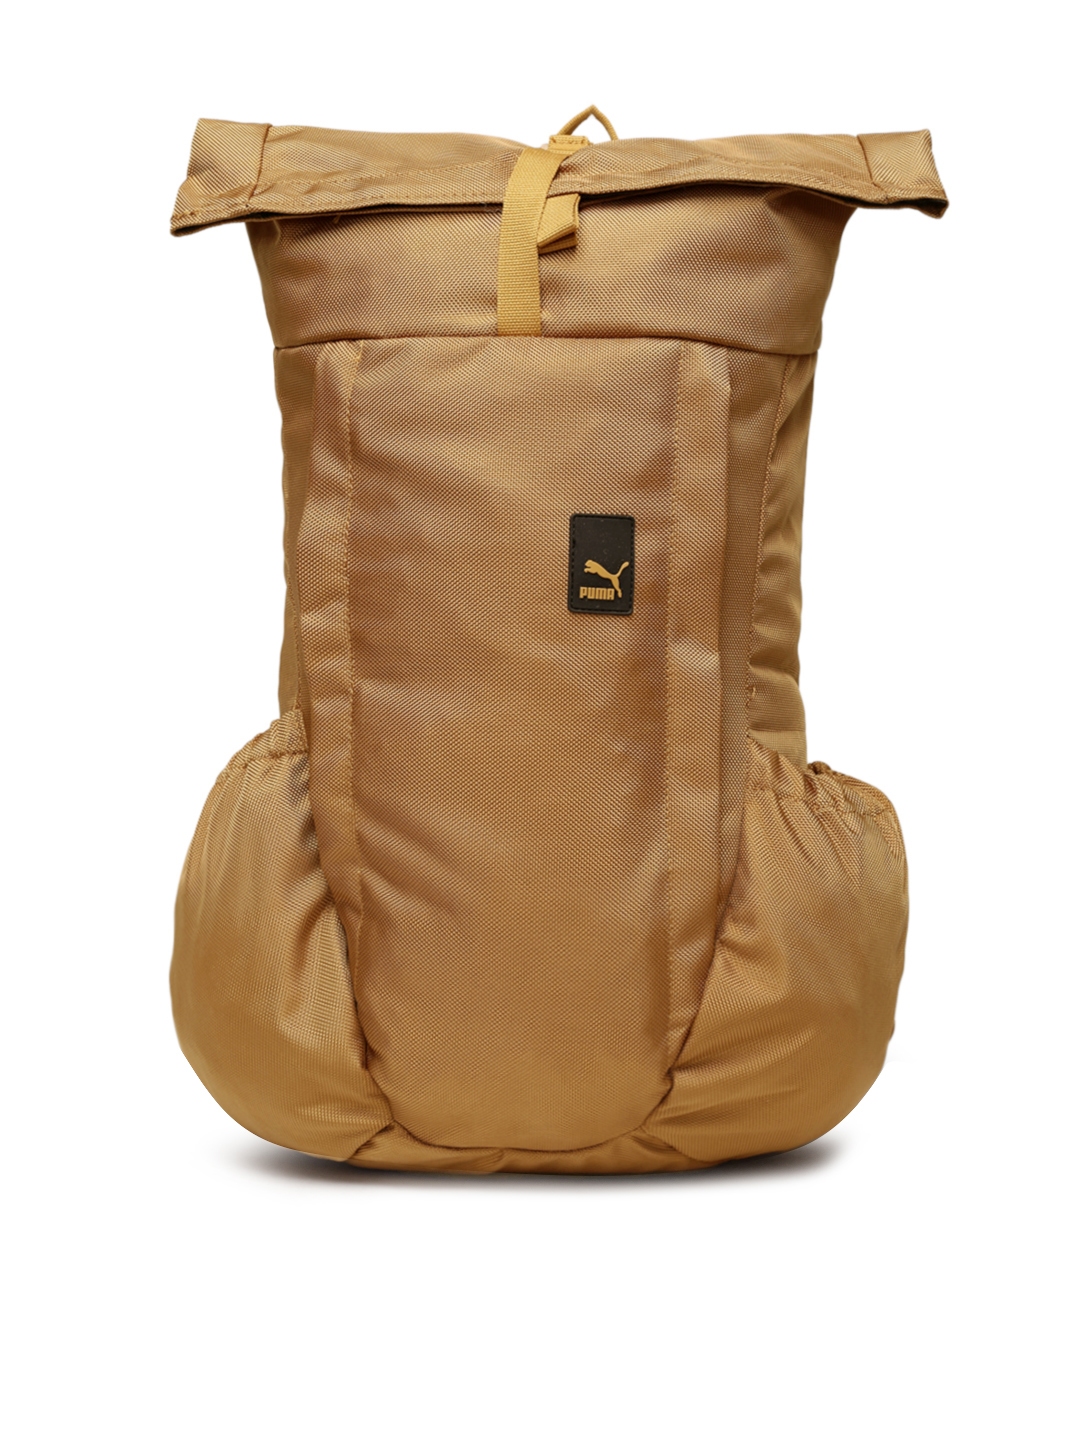 puma rolltop rucksack